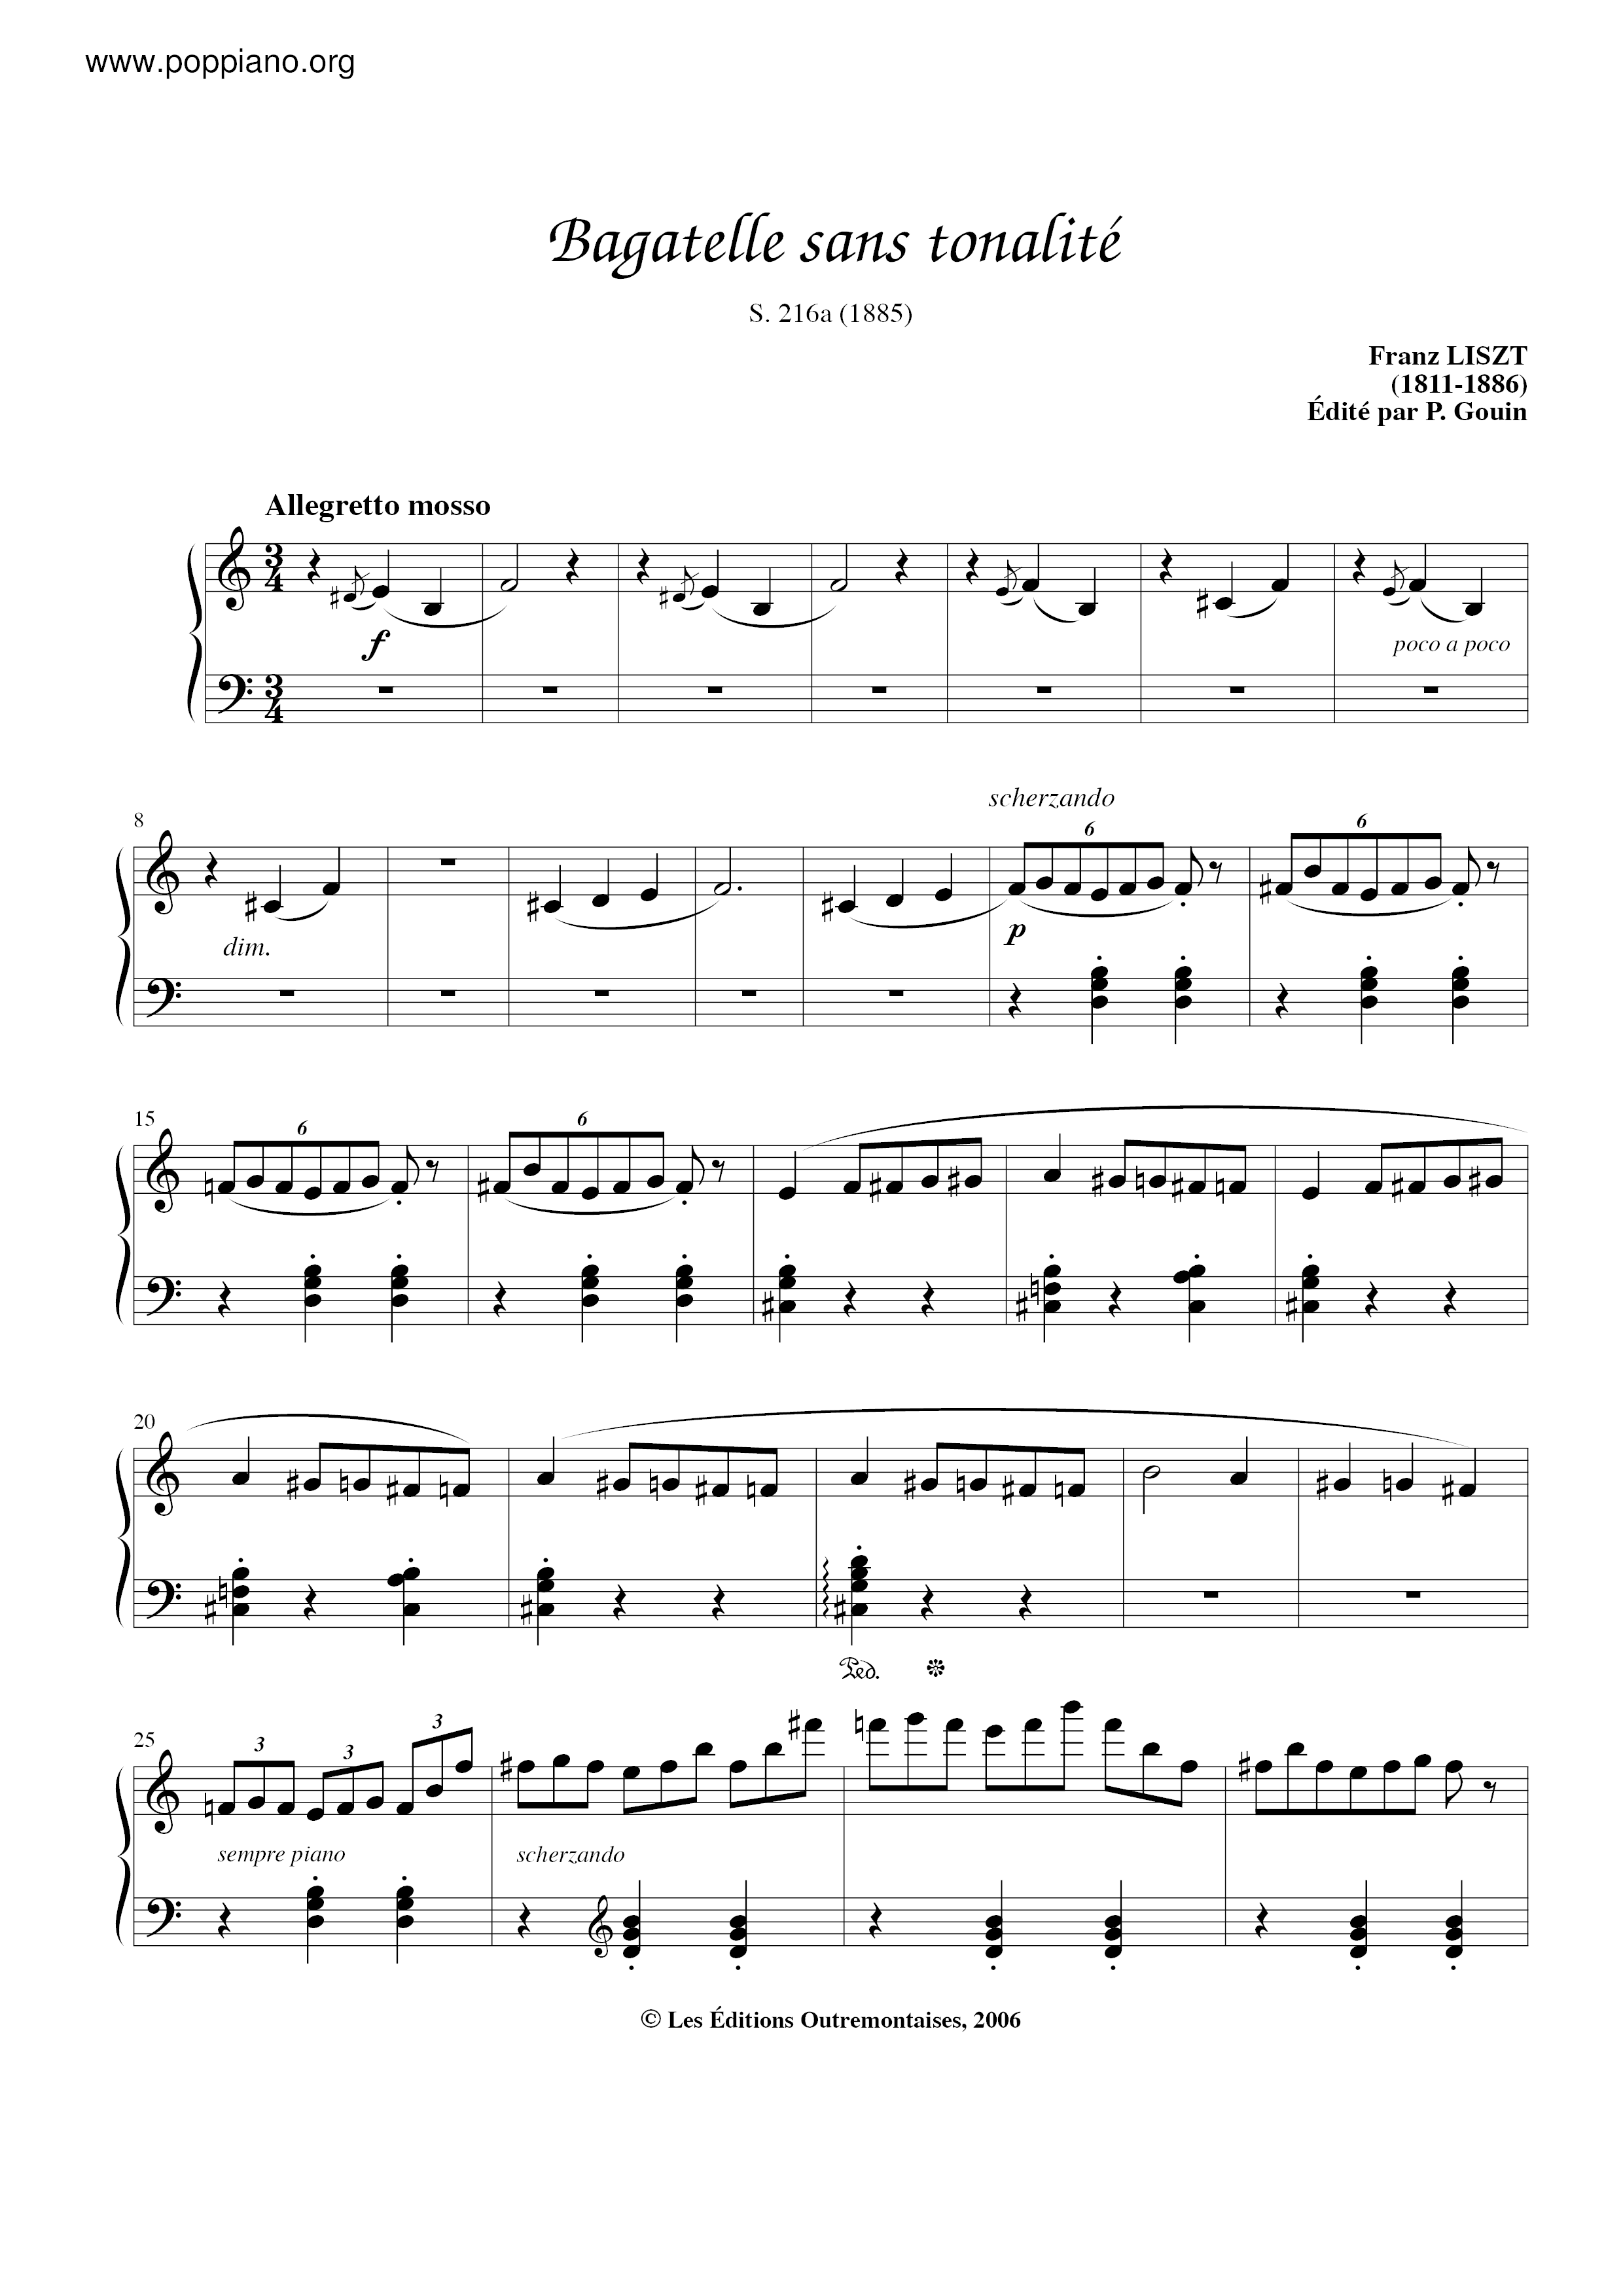 Bagatelle sans tonalite, S.216a琴谱